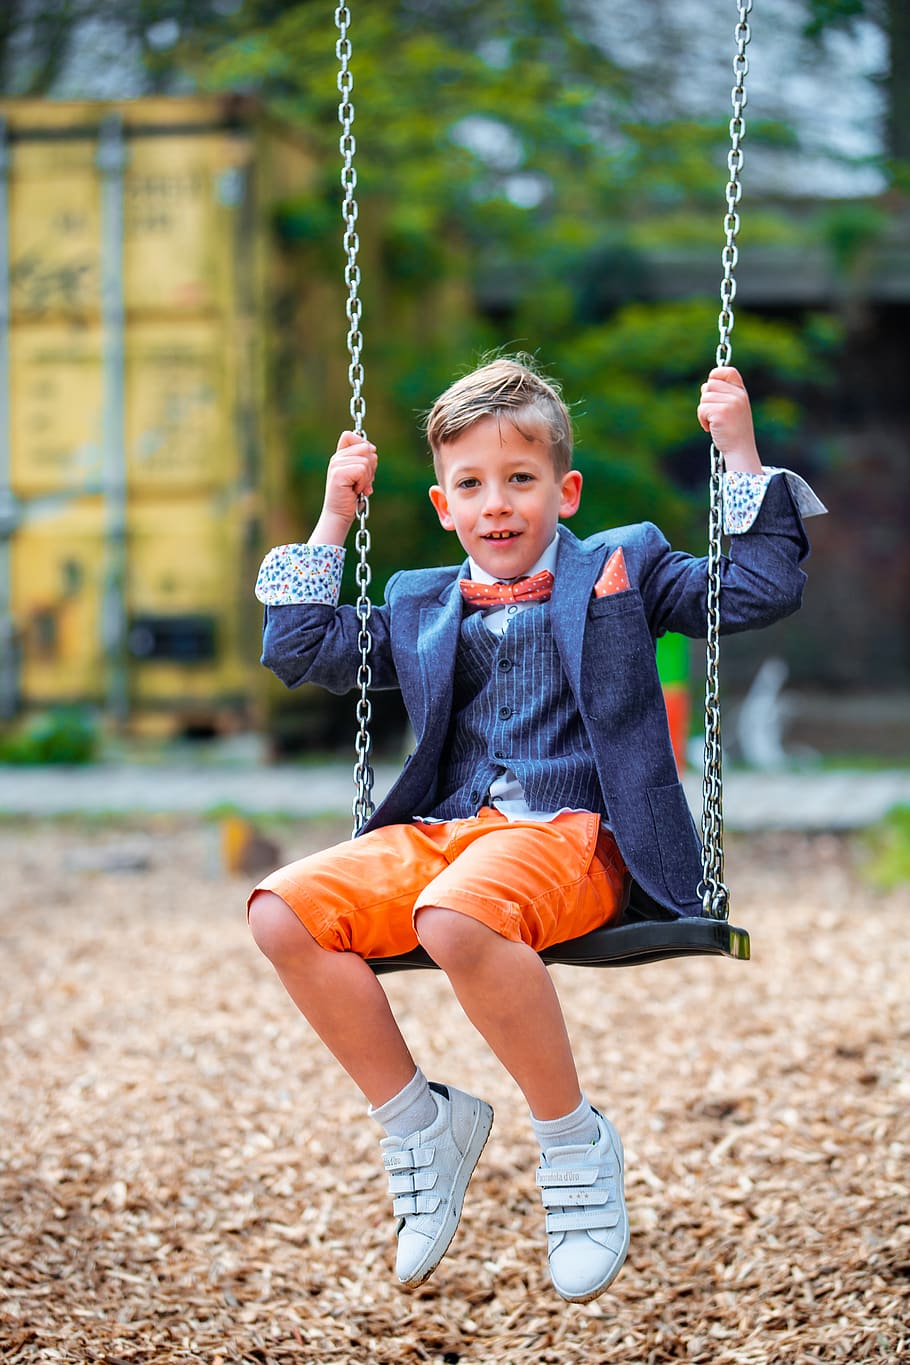 boy in pinstriped suit jacket on swing, apparel, shoe, footwear